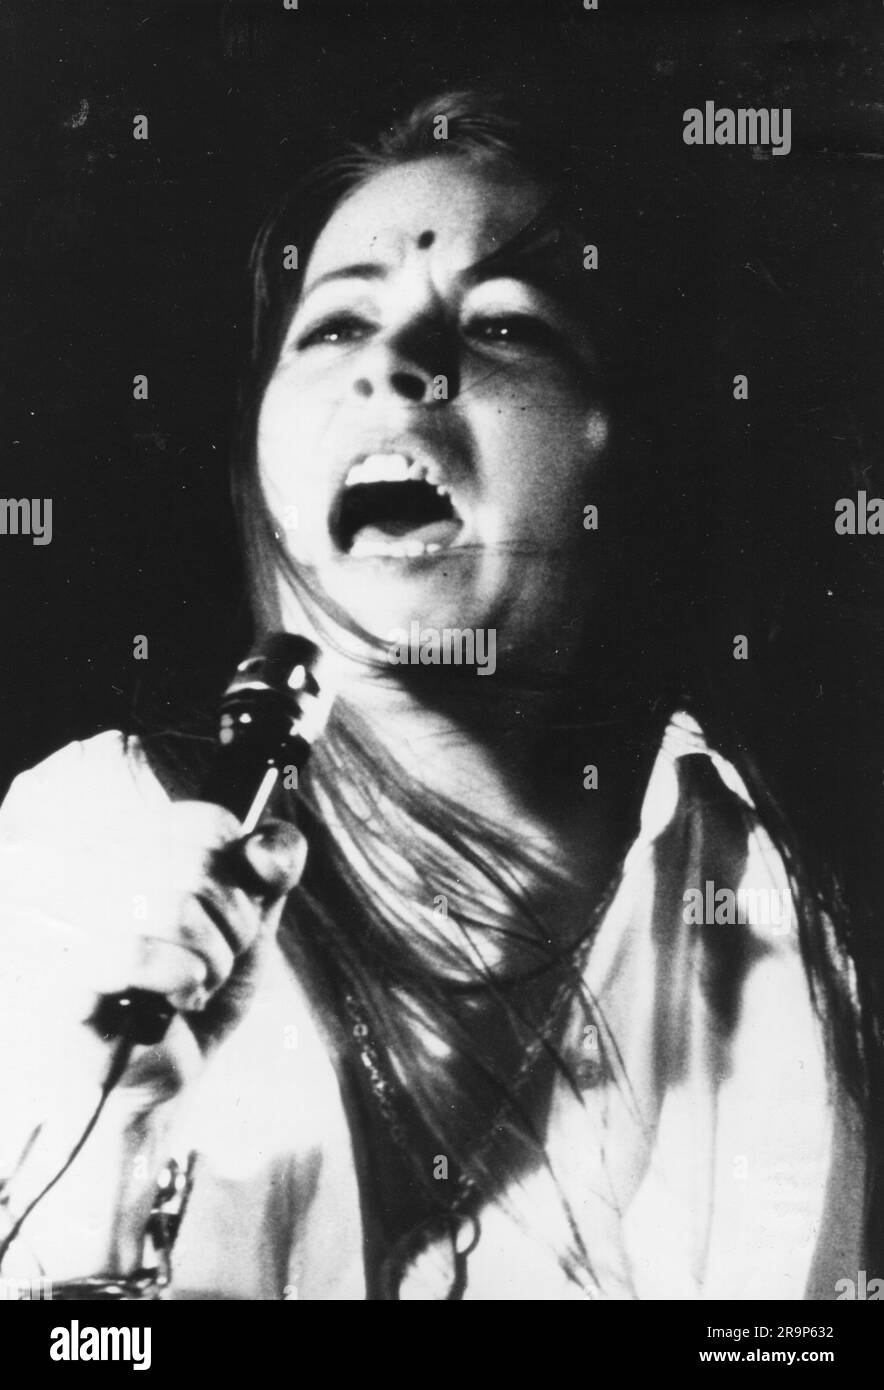 Weinhold, Jutta, * 19.10.1947, cantante alemán (música rock), junto a la actuación en el escenario, años setenta, ADDITIONAL-RIGHTS-CLEARANCE-INFO-NOT-AVAILABLE Foto de stock